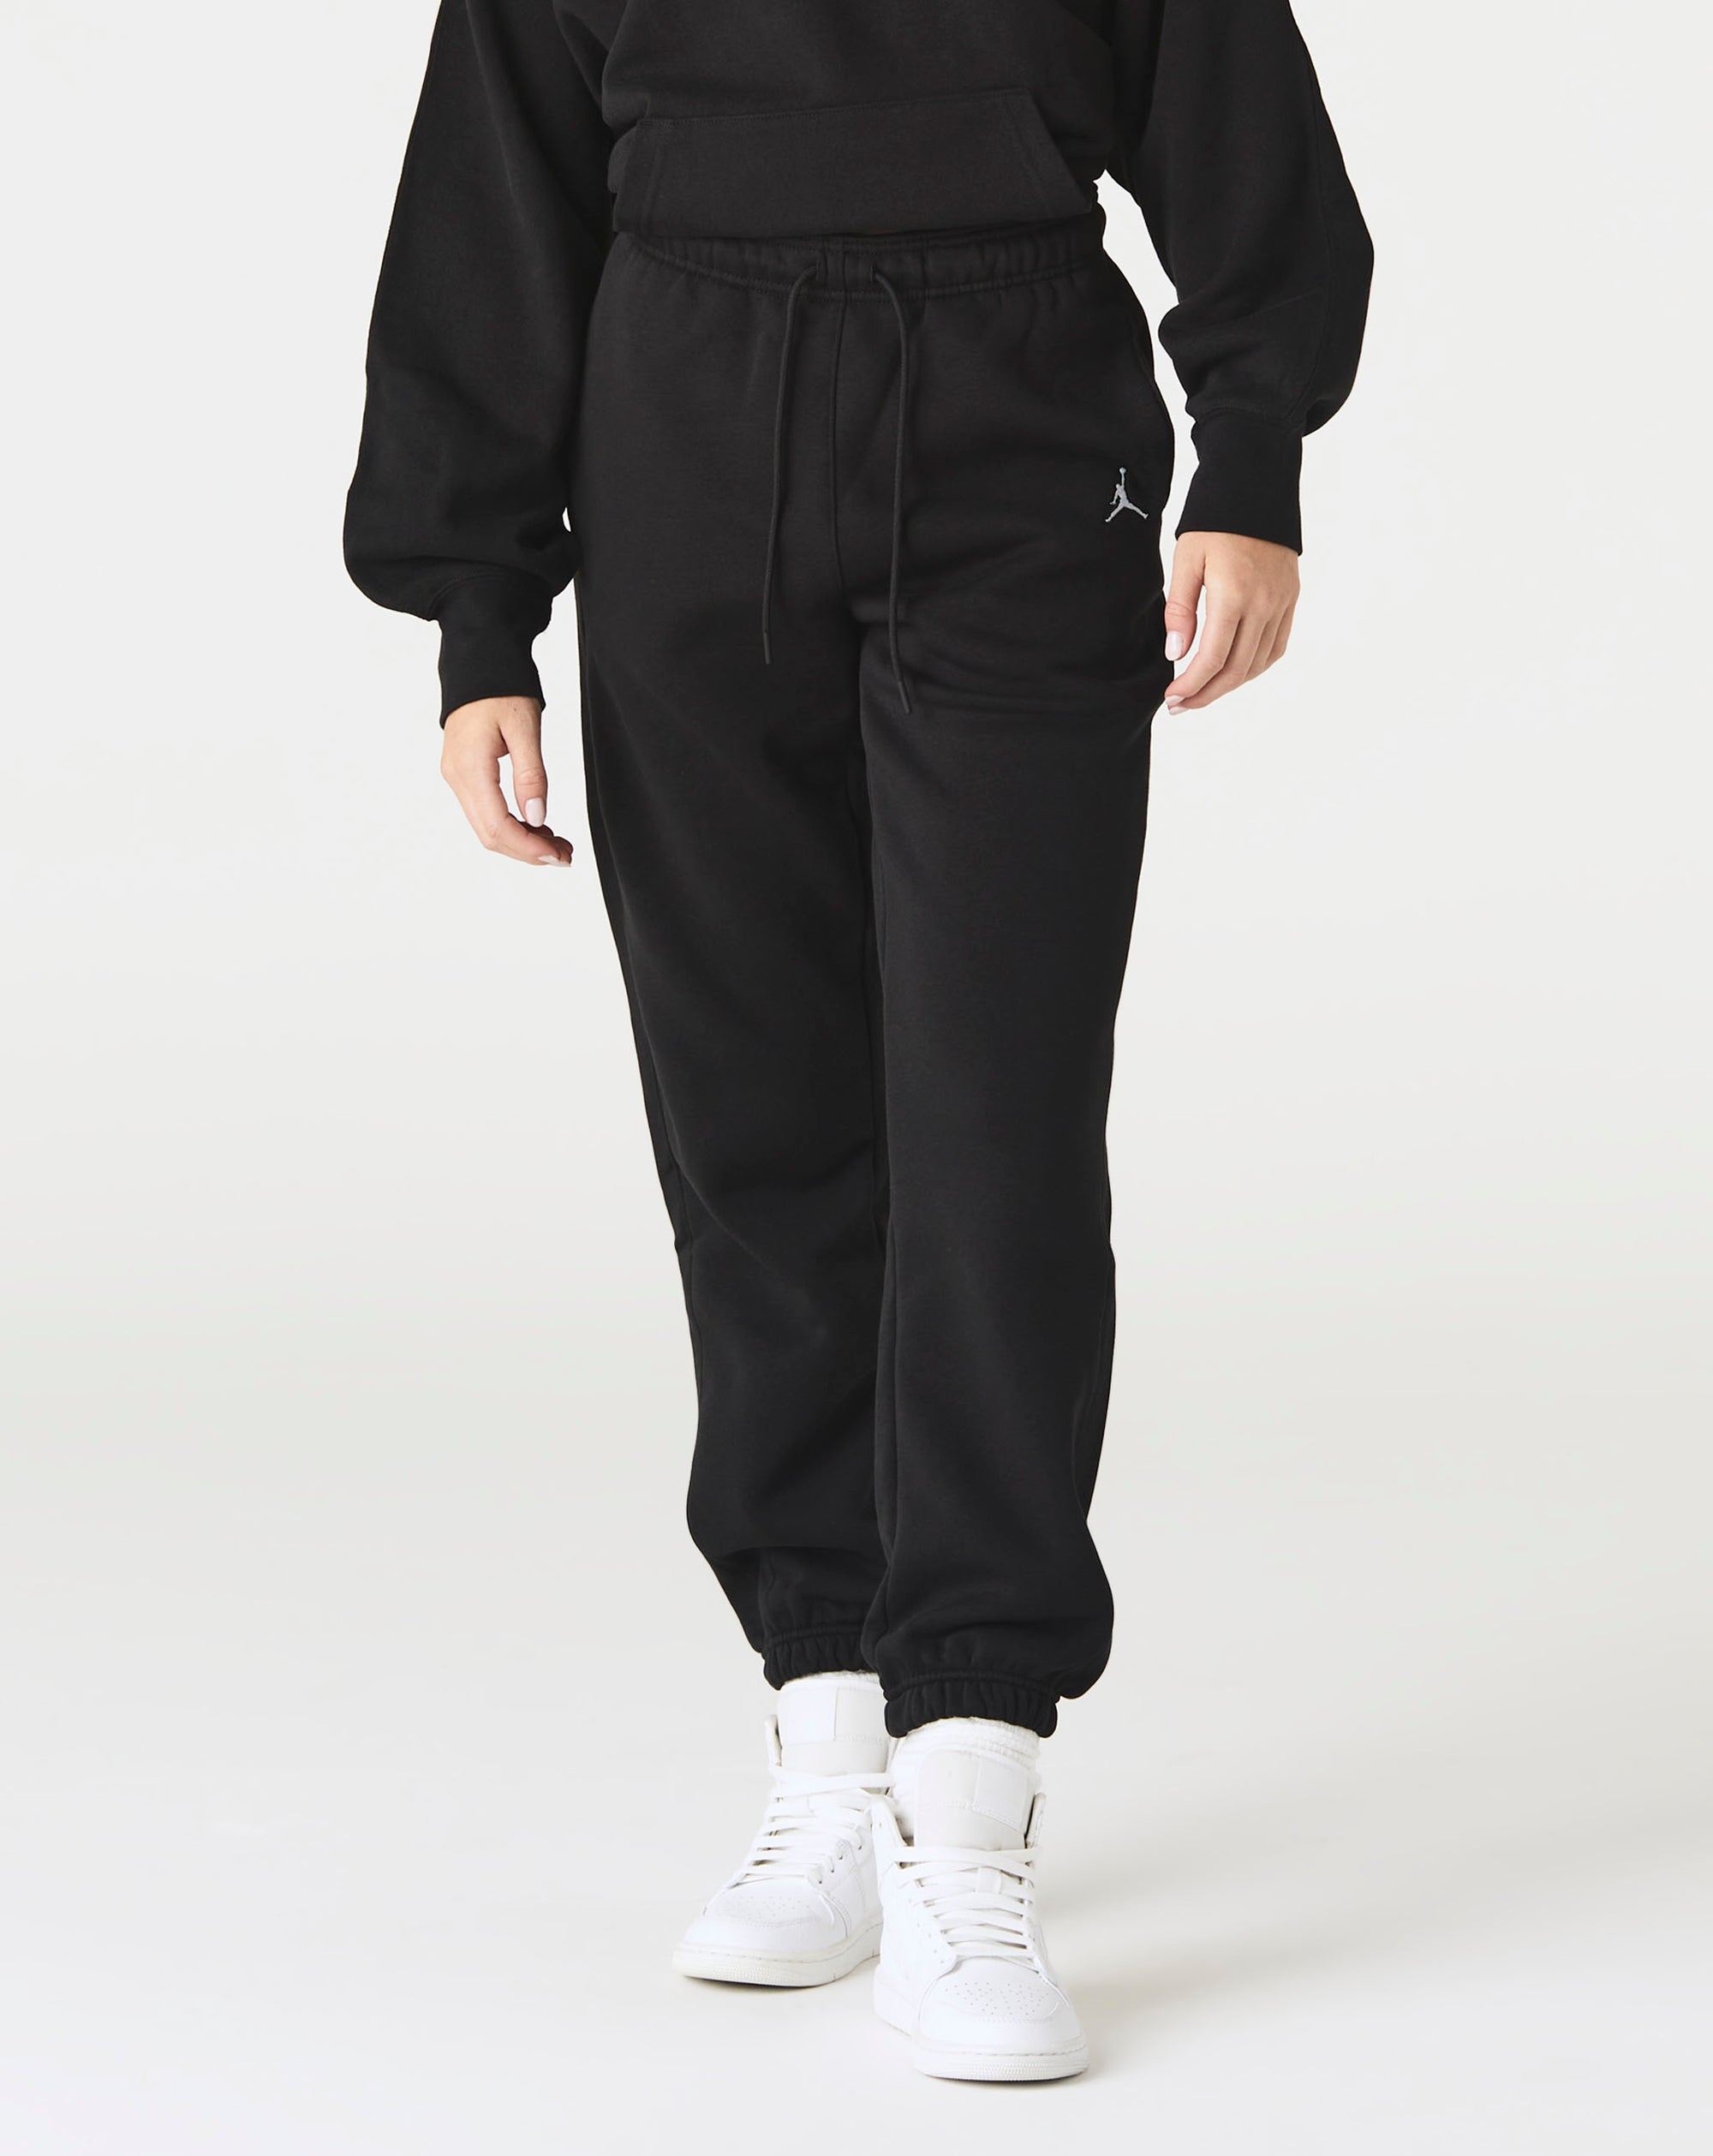 Air Jordan Women's Jordan Brooklyn Fleece Pants - Rule of Next Apparel